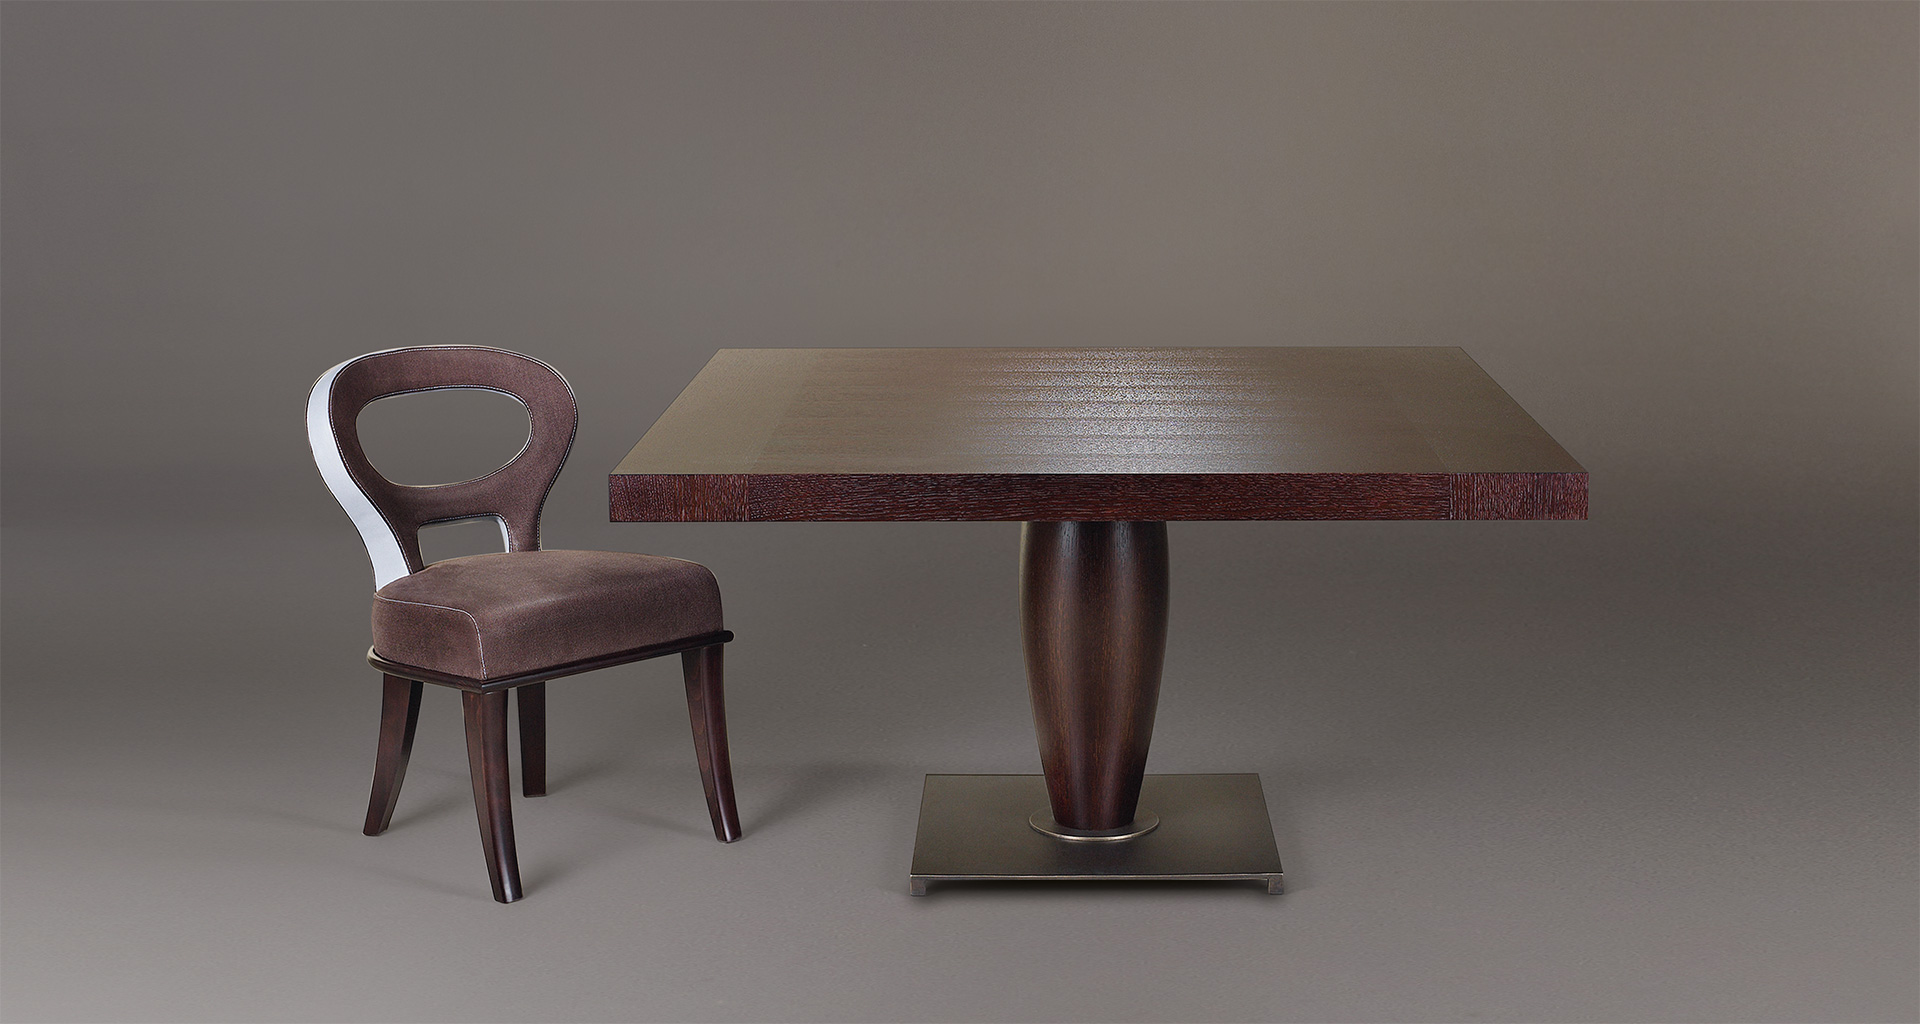 Bassano è un tavolo da pranzo imponente in legno disponibile con top intarsiato, del catalogo di Promemoria | Promemoria